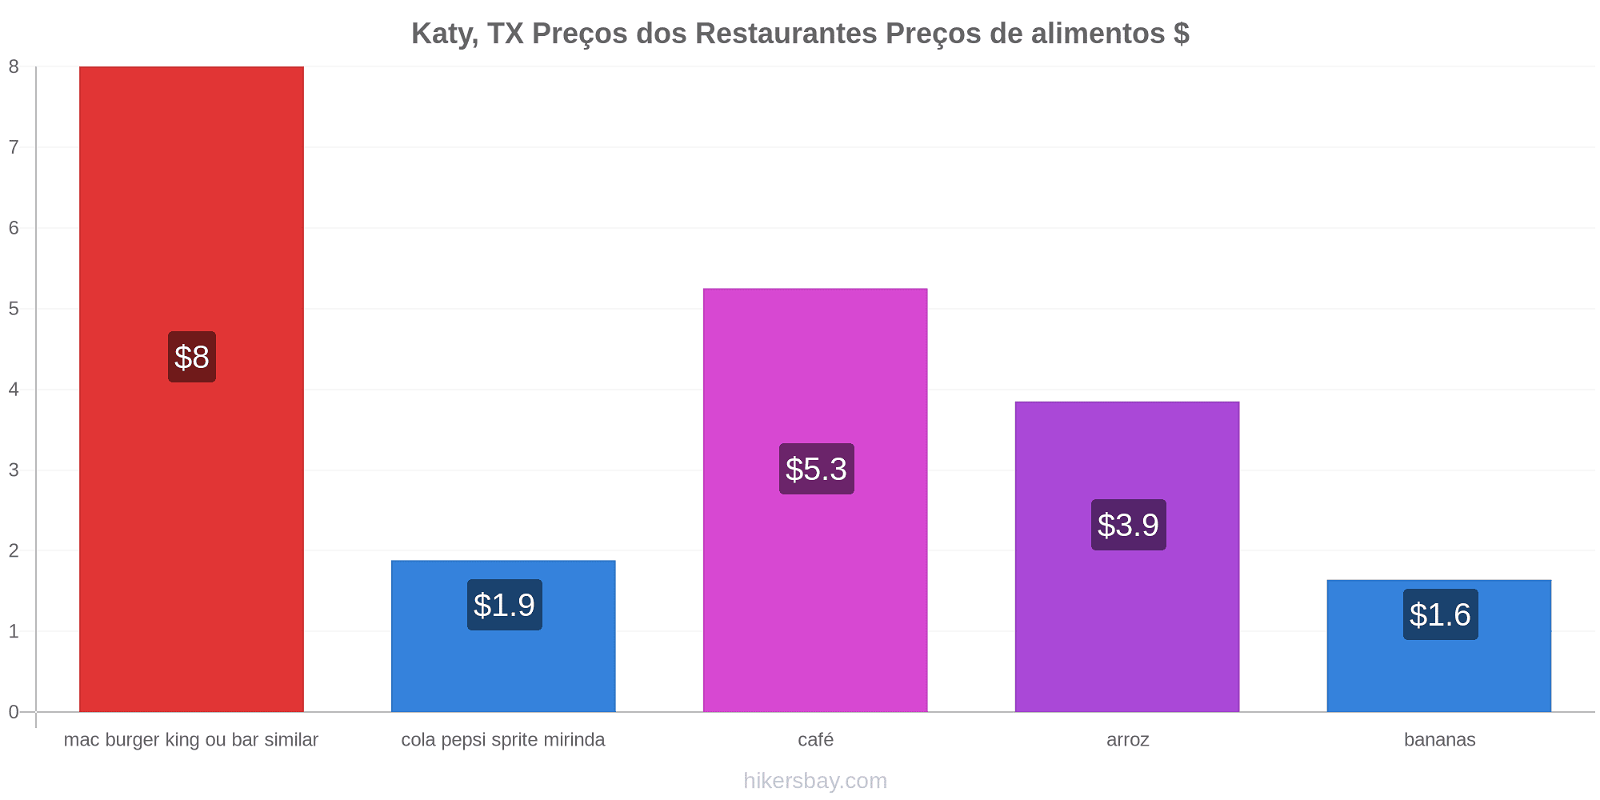 Katy, TX mudanças de preços hikersbay.com